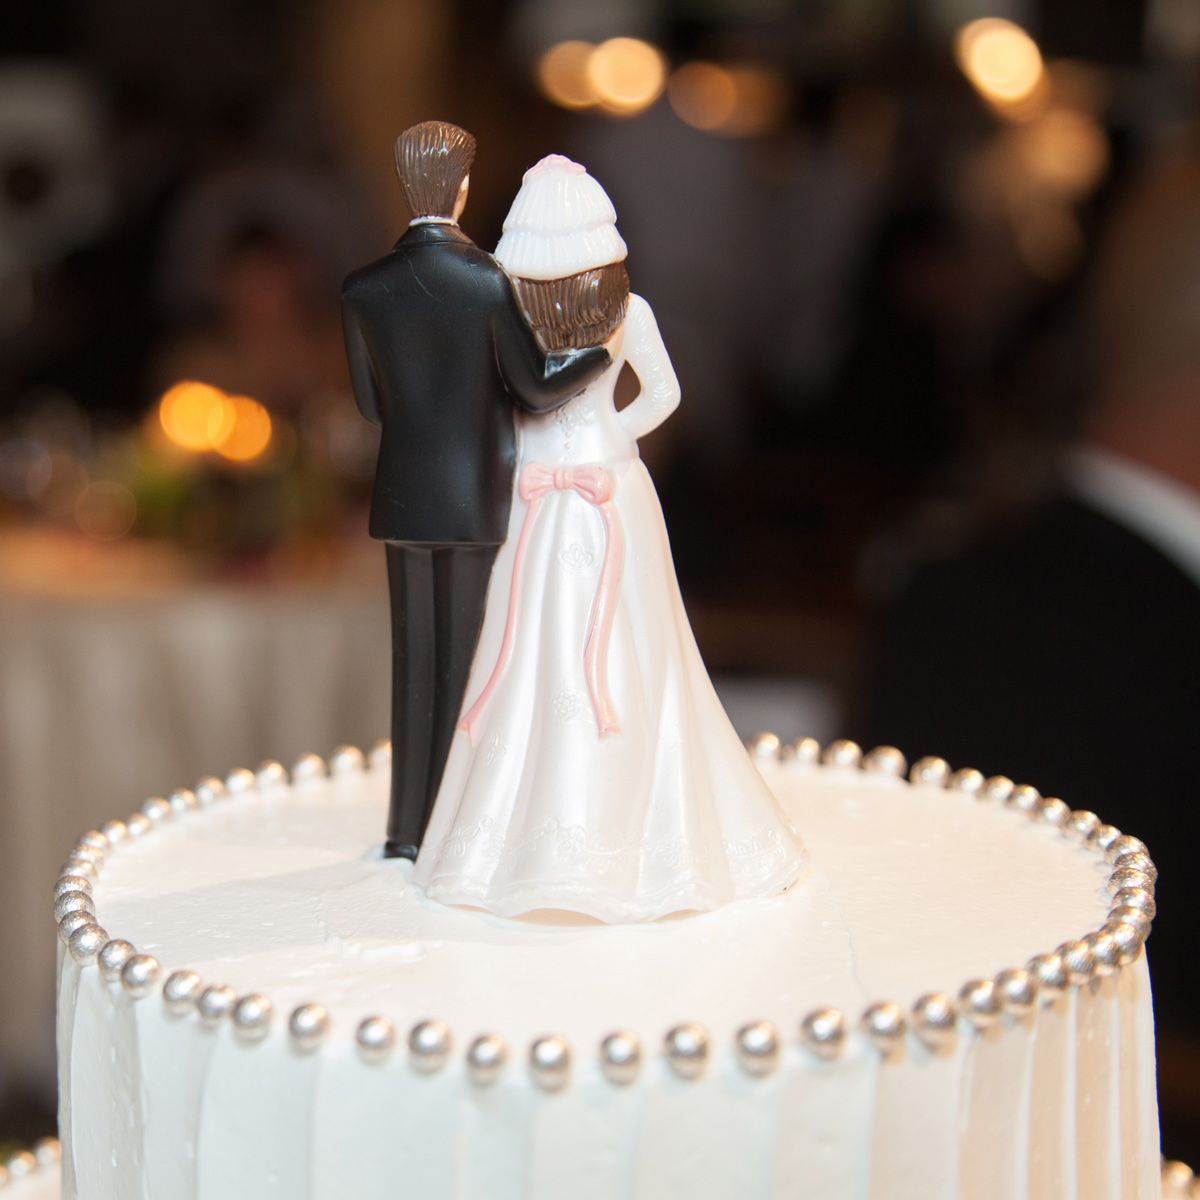 Cake, Dessert, Bridal clothing, Baked goods, Cake decorating, Formal wear, Bride, Dress, Wedding dress, Suit, 